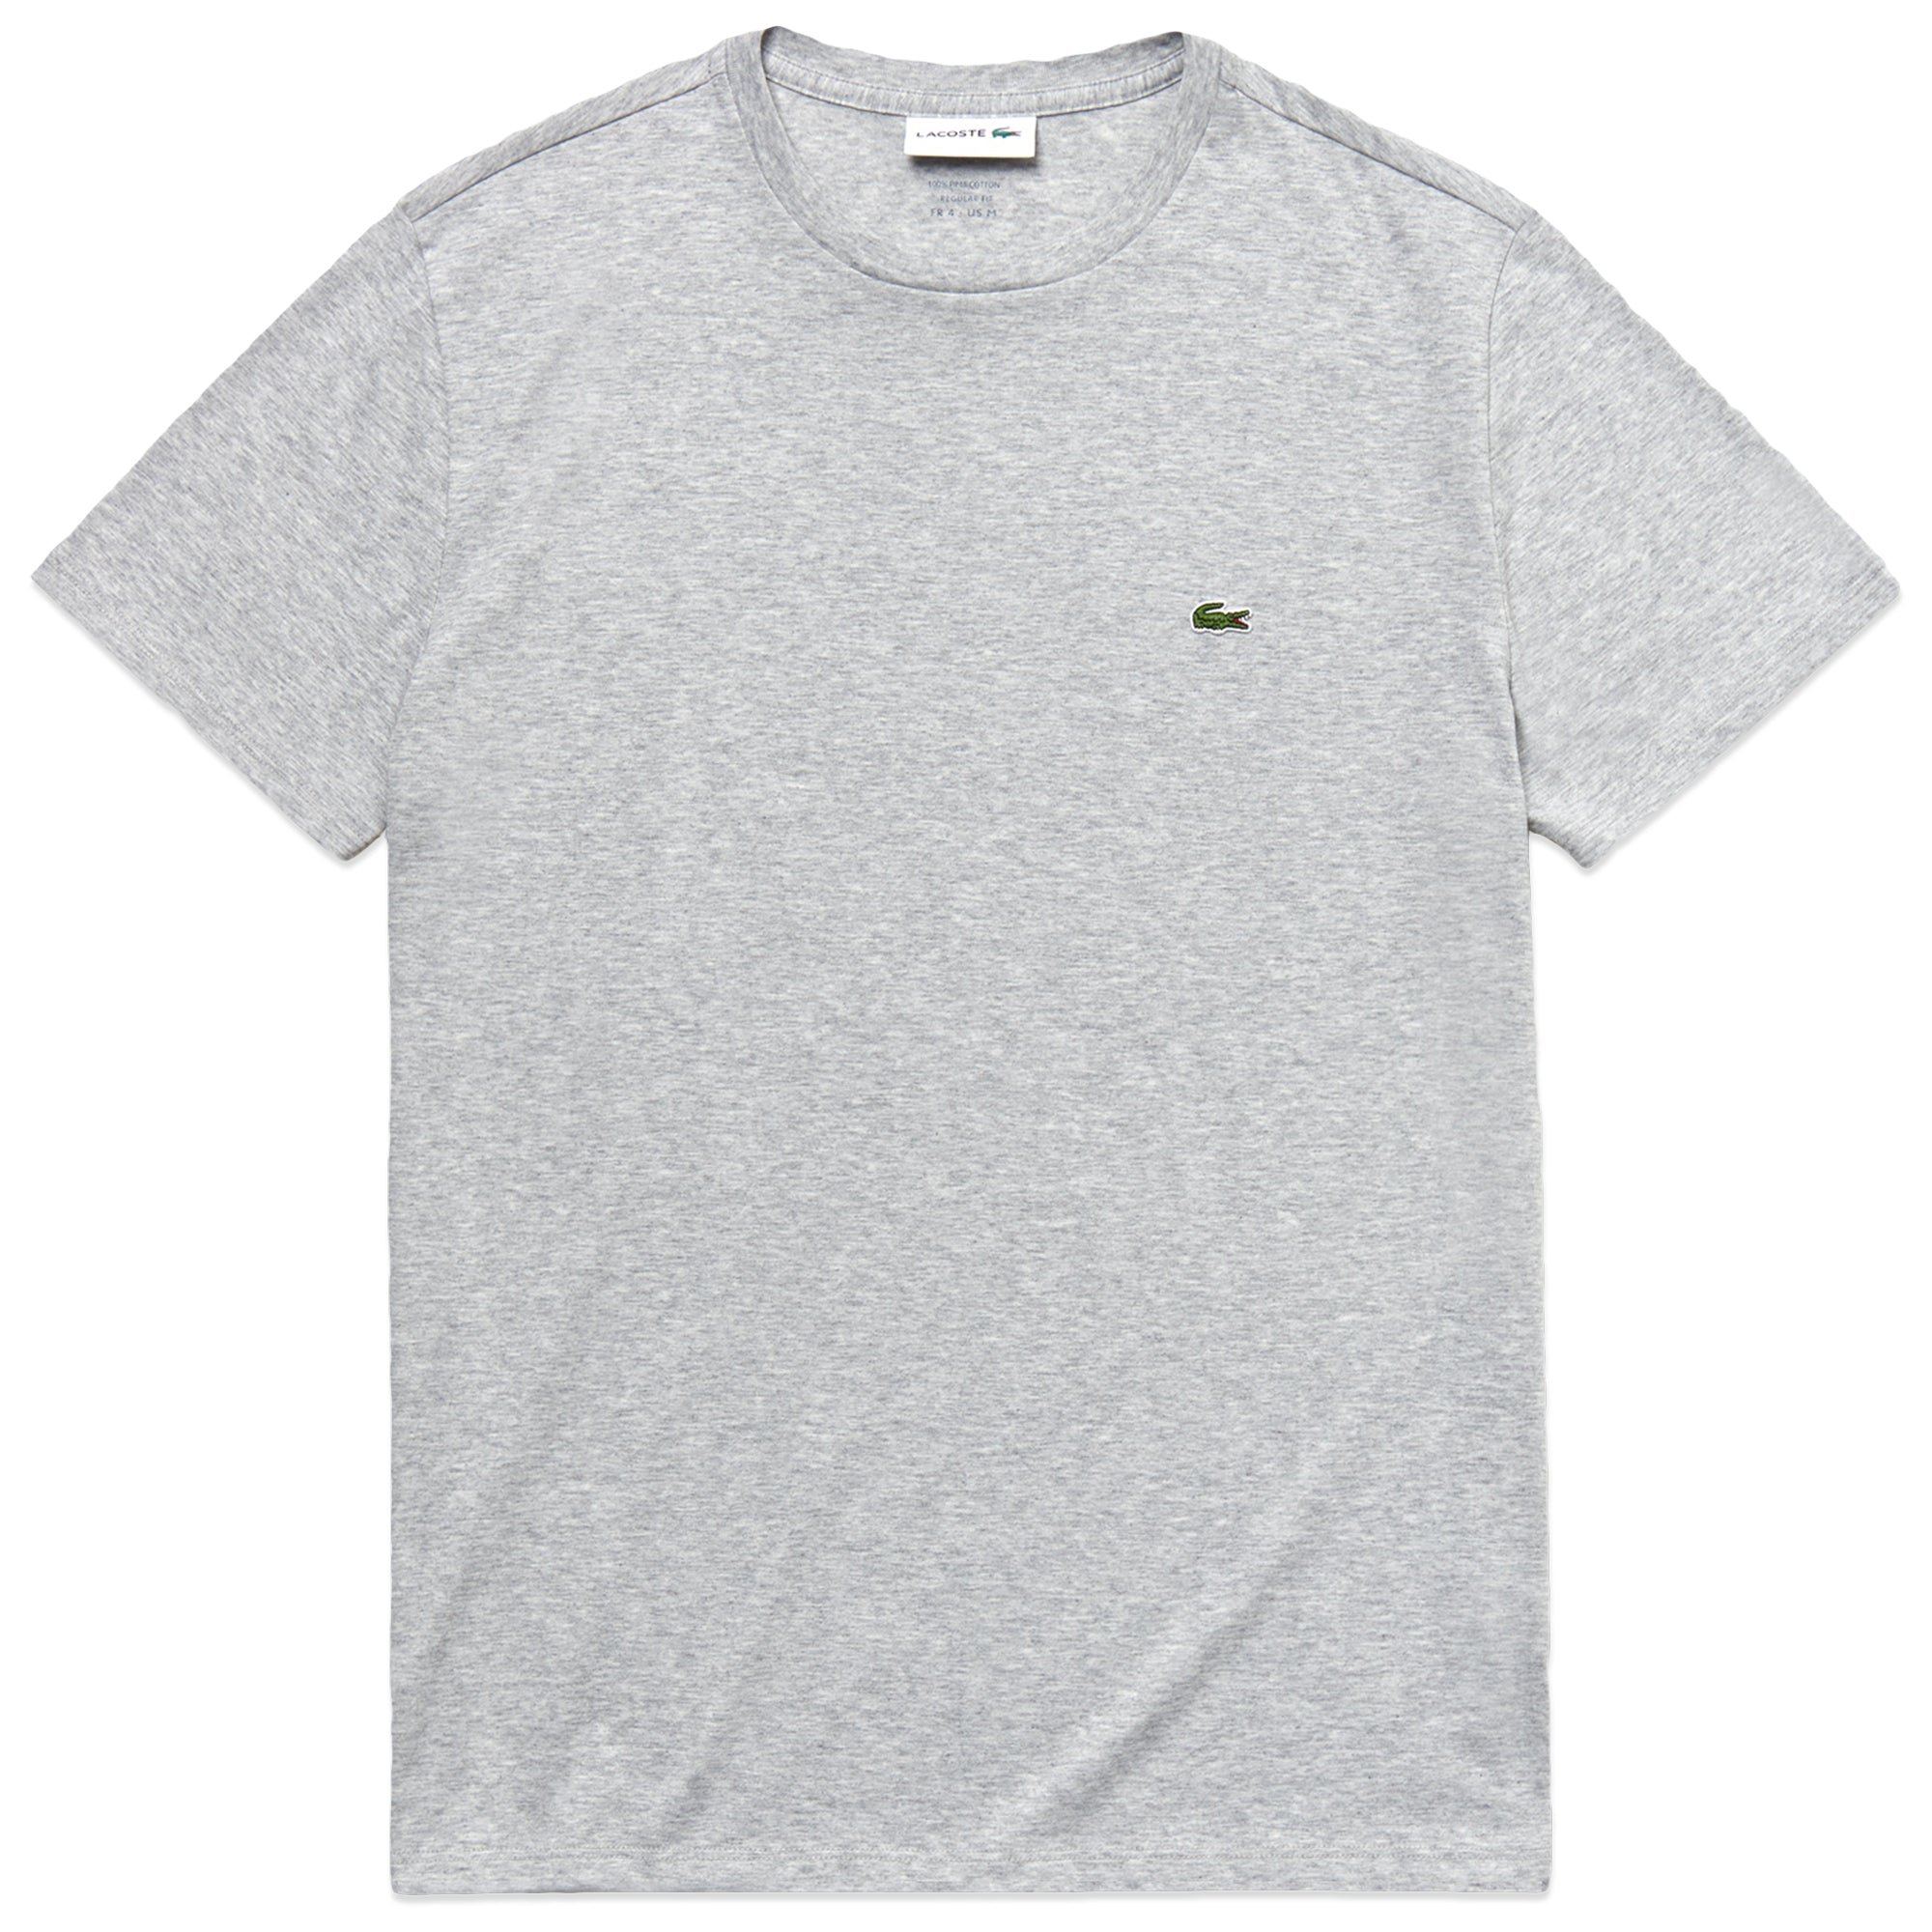 Lacoste TH6709 Pima Cotton T-Shirt - Silver Chine